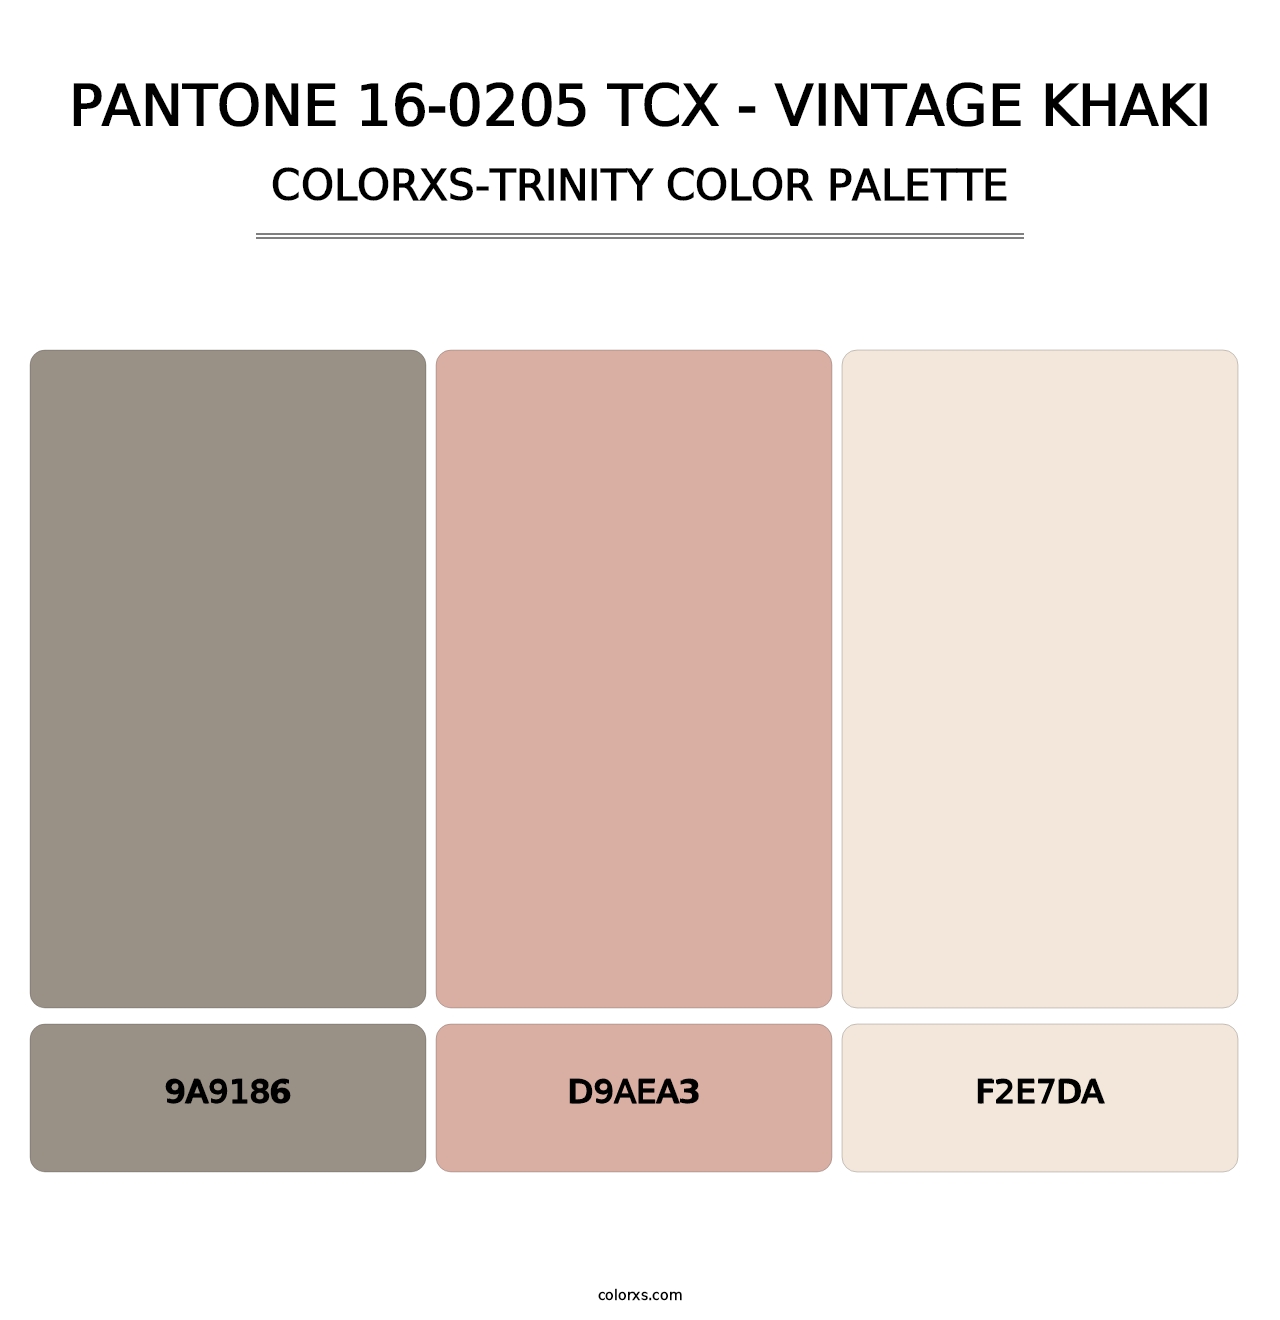 PANTONE 16-0205 TCX - Vintage Khaki - Colorxs Trinity Palette